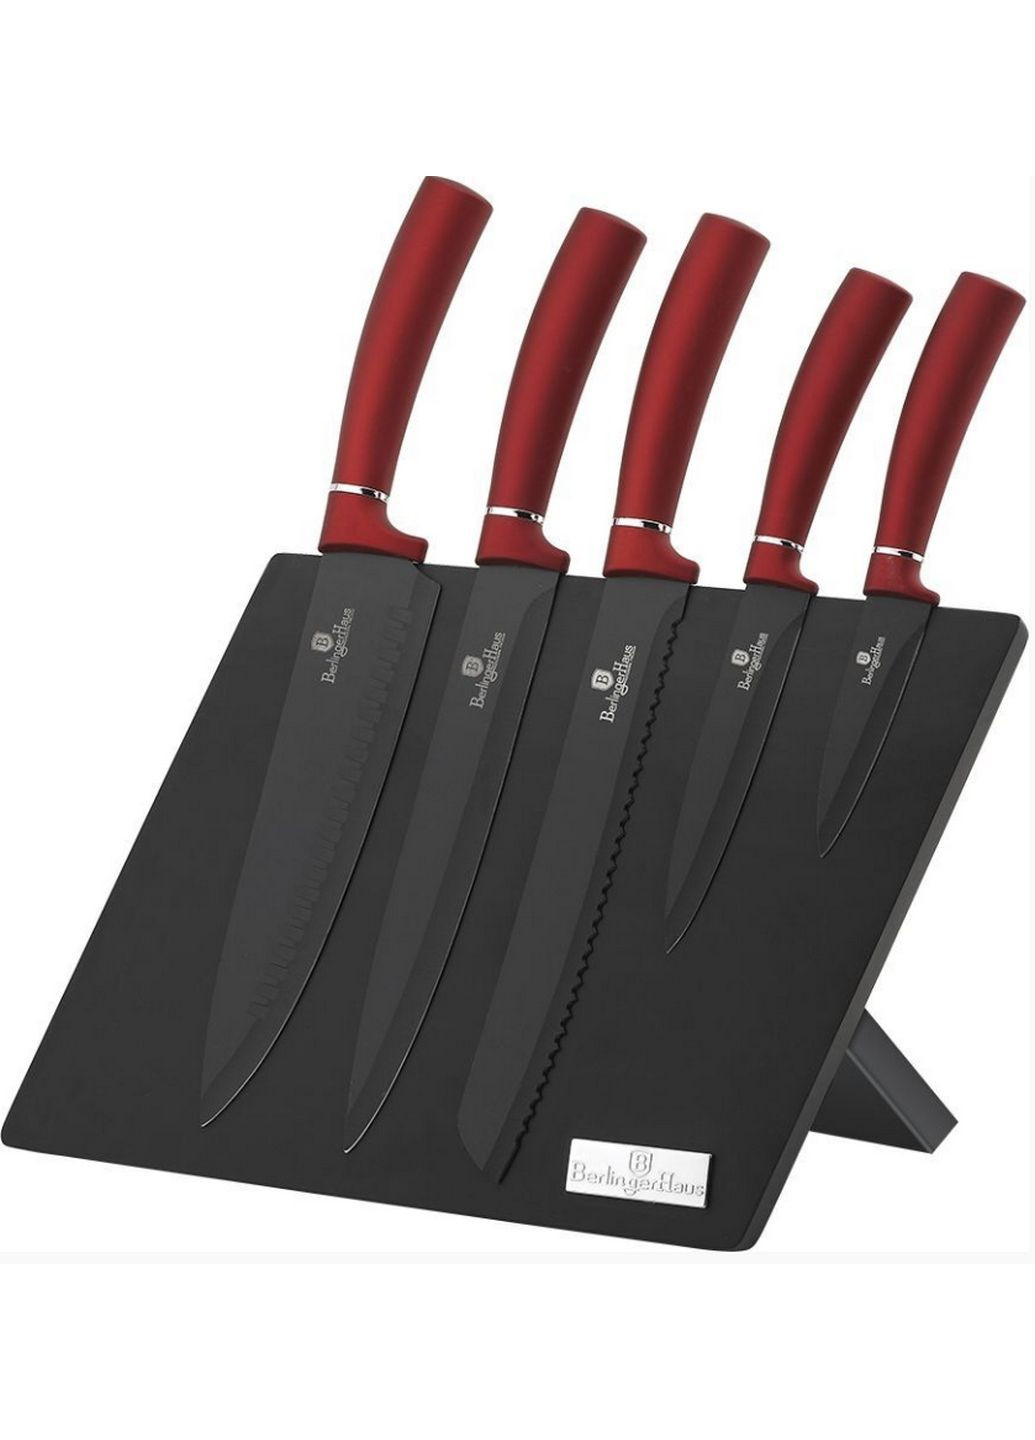 Набор ножей из 6 предметов Berlinger Haus красные,